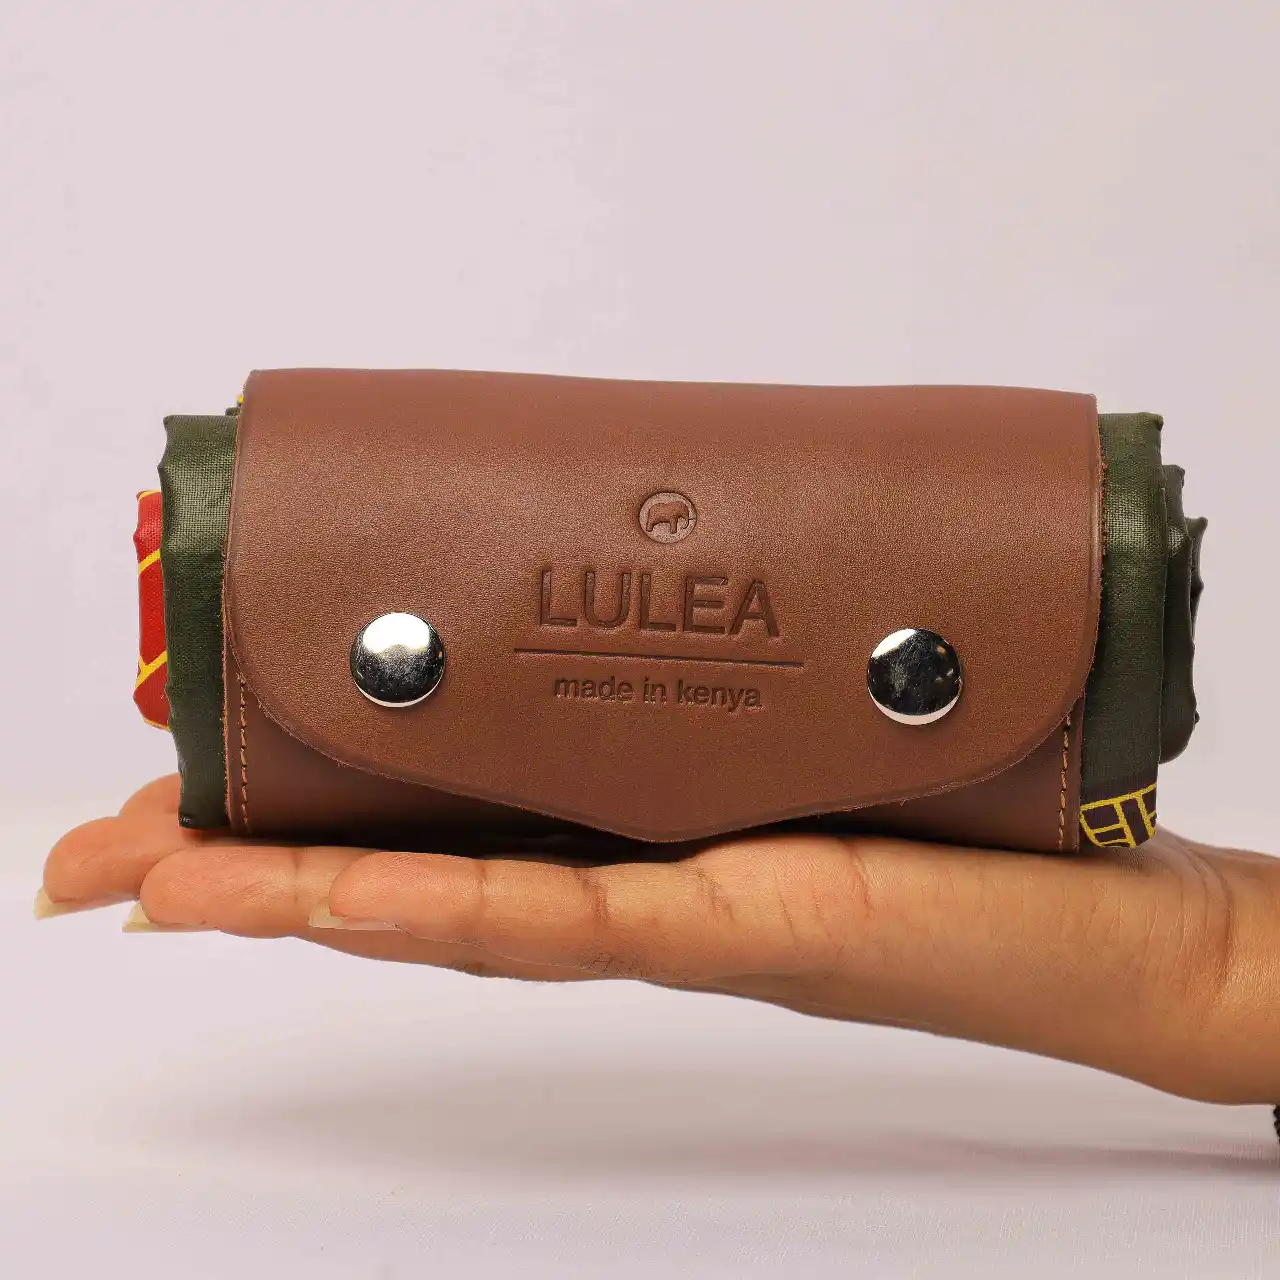 Luxury Leather Africa (LuLea)